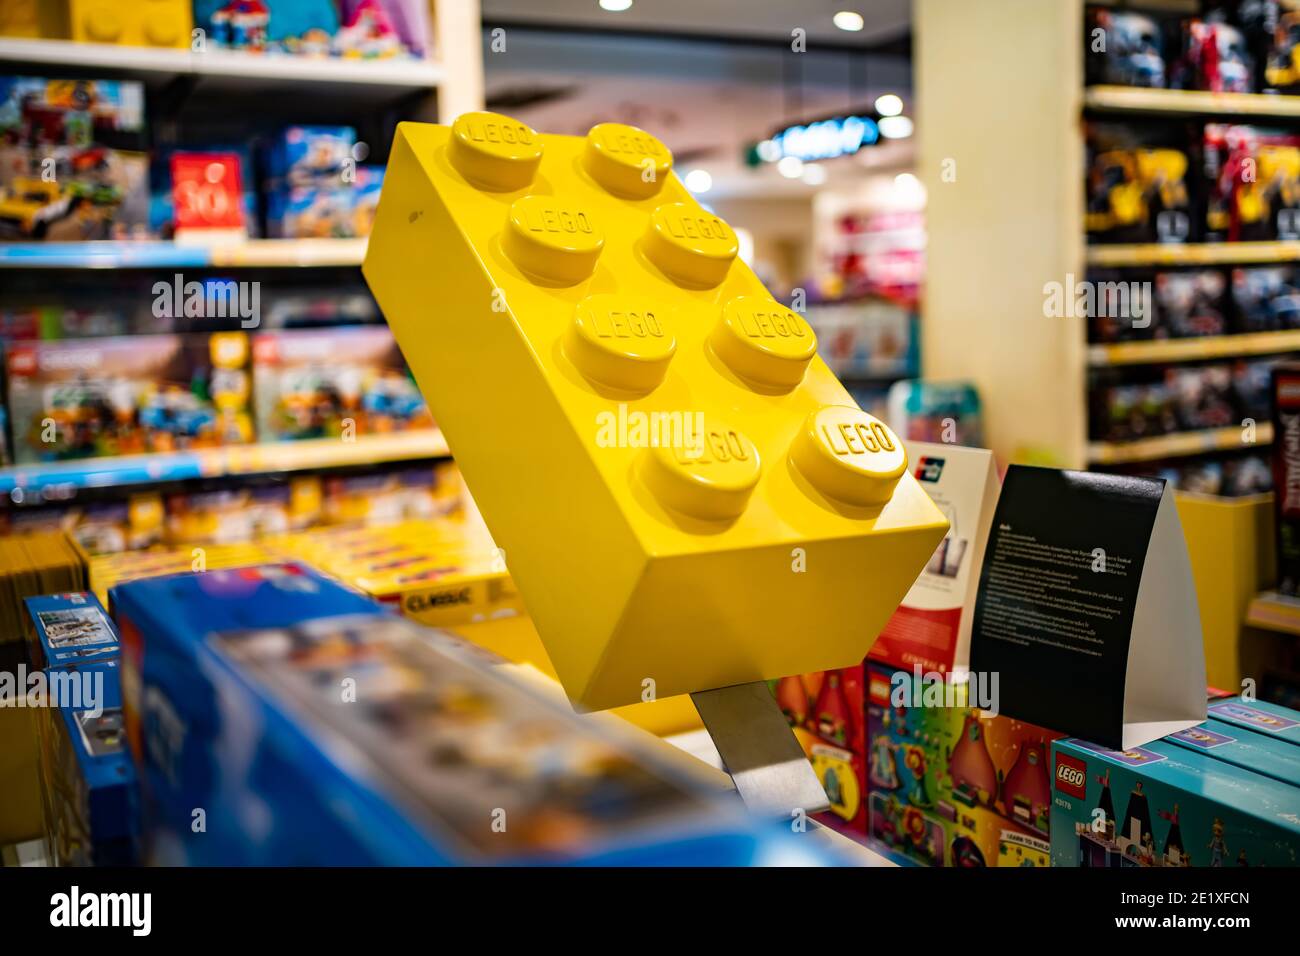 Bangkok, Thaïlande - 9 janvier 2021 : UNE brique jaune géante Lego sur une étagère dans un rayon de jouets dans un grand magasin. Banque D'Images